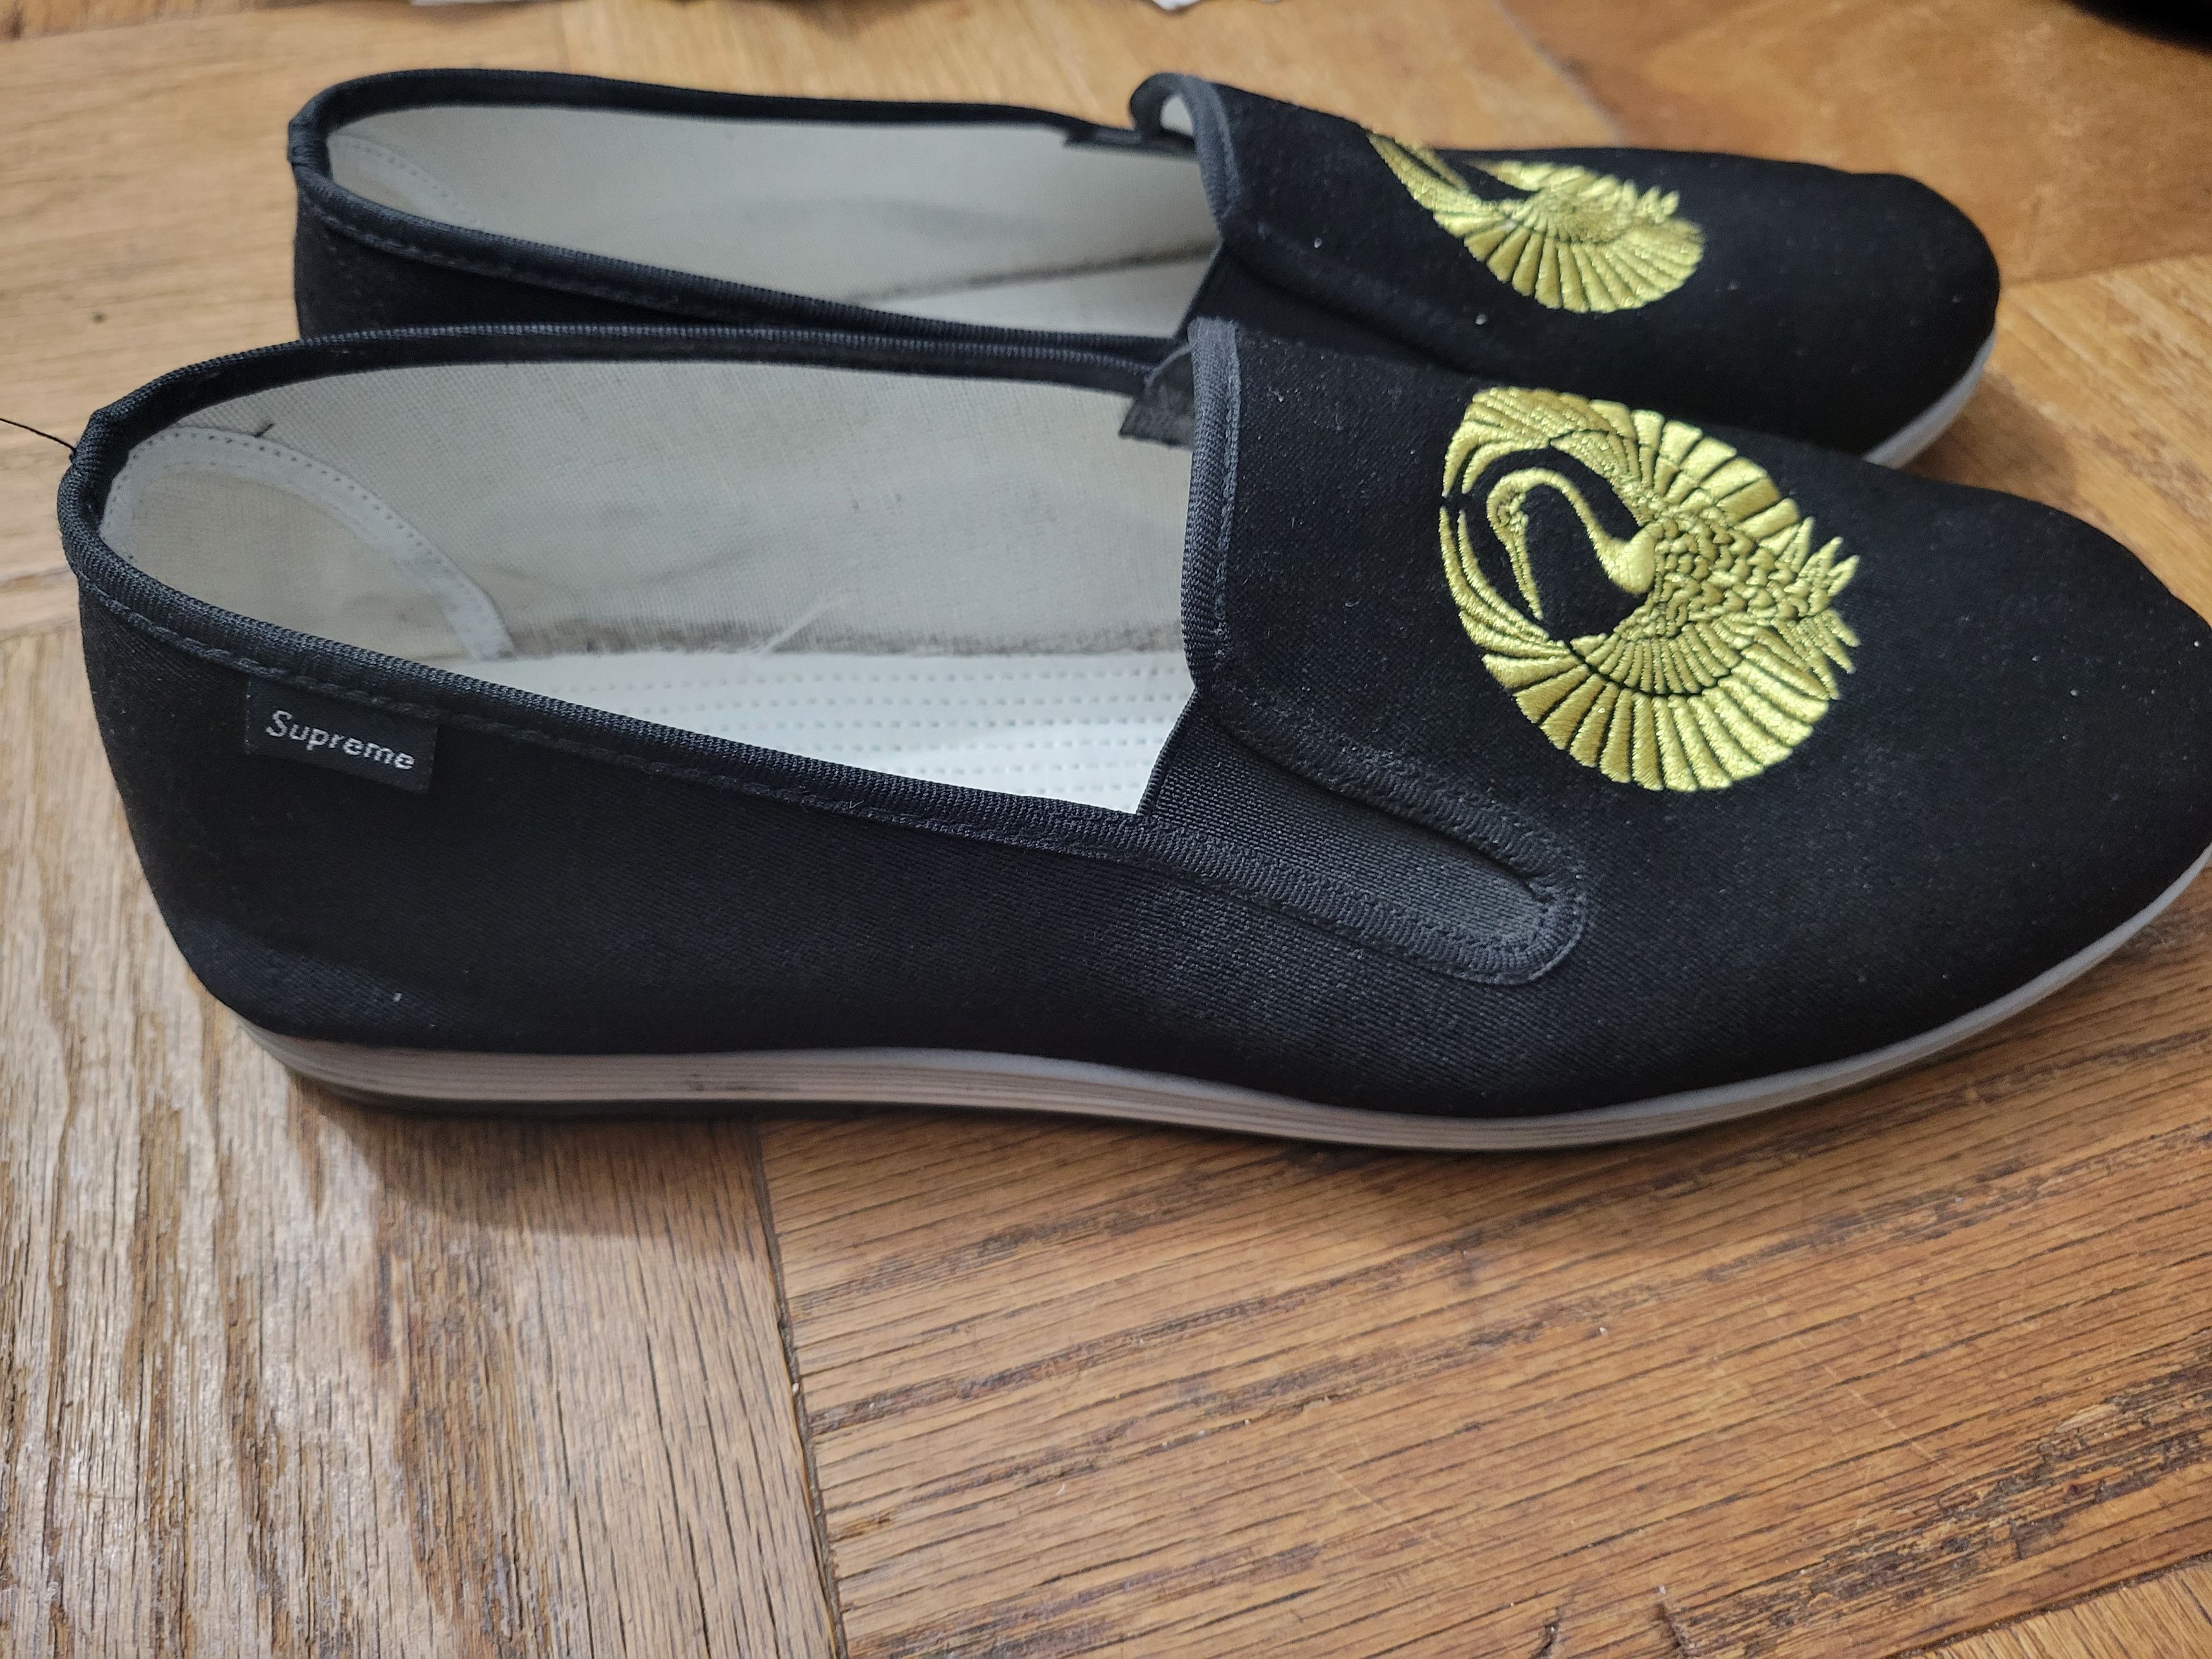 Supreme Supreme x Sasquatchfabrix slip on martial arts shoes | Grailed